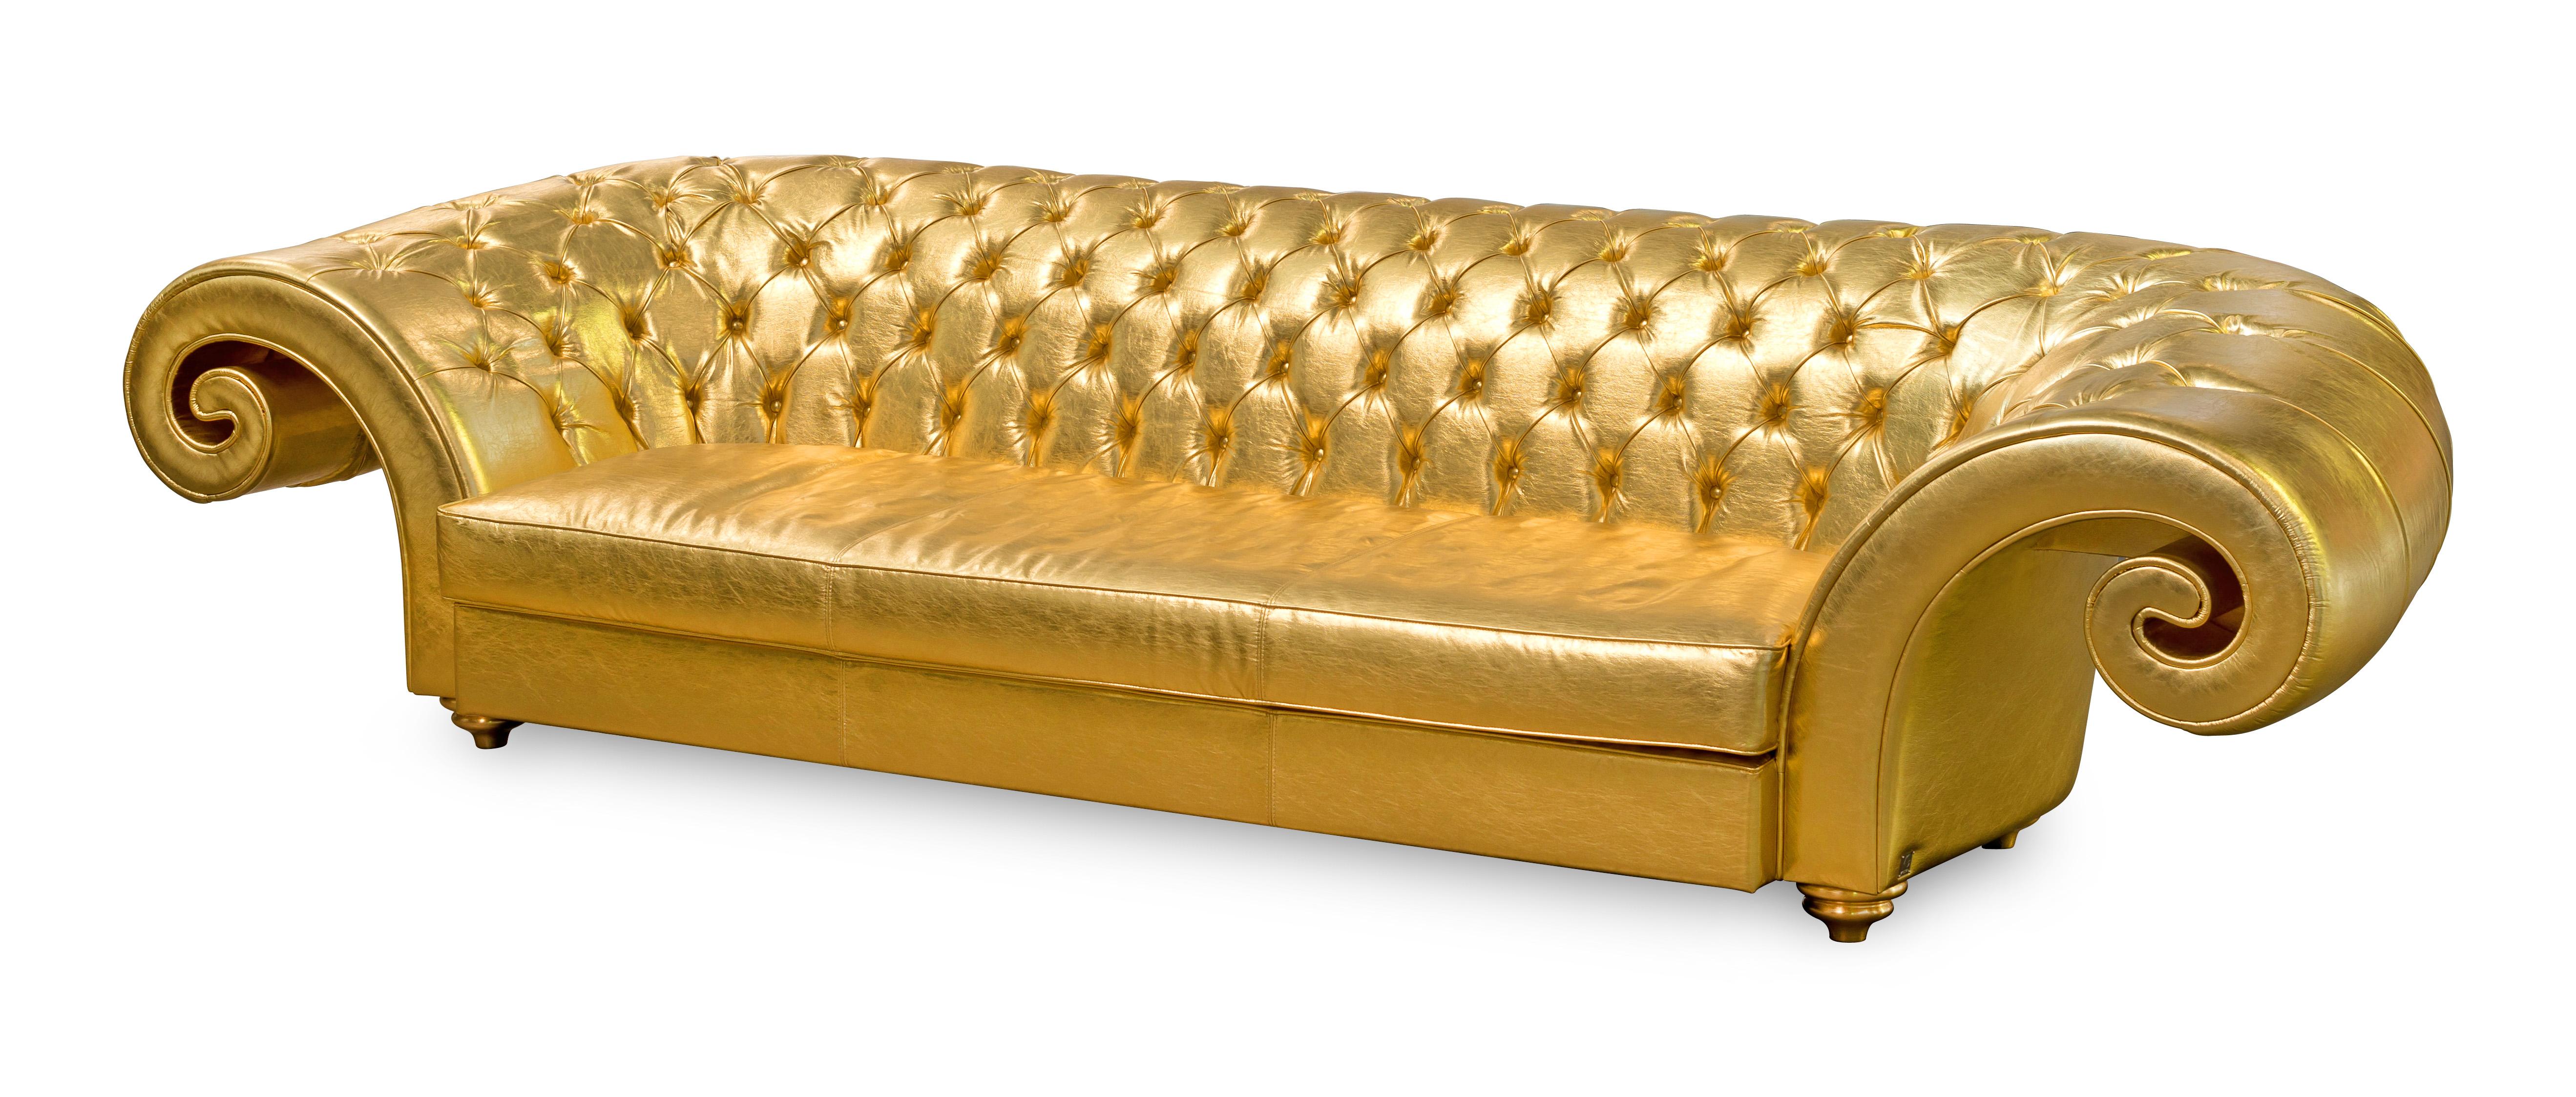 VG-Möbel stehen für Luxus im Sinne von Exklusivität, Distinktion und hoher Qualität. Sie sind das Ergebnis eines anspruchsvollen und exklusiven Designs mit einer starken Identität und sind das Ergebnis einer sorgfältigen Beachtung der typischen